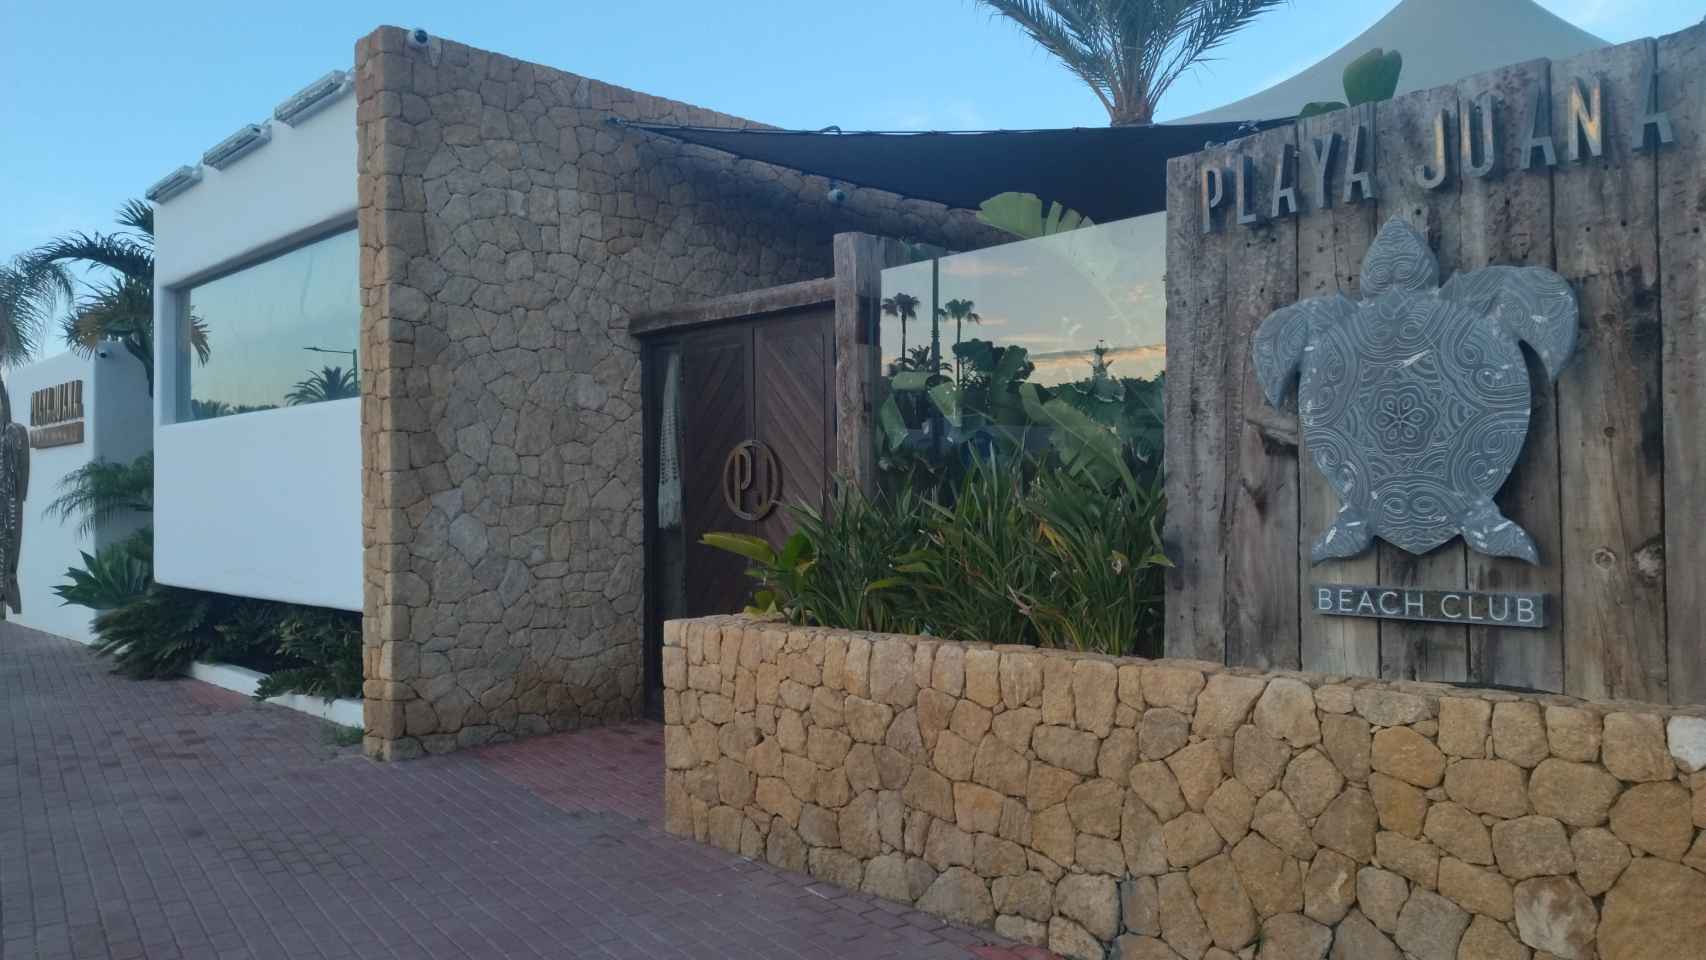 La fachada del conocido Playa Juana Beach Club de Mojácar.